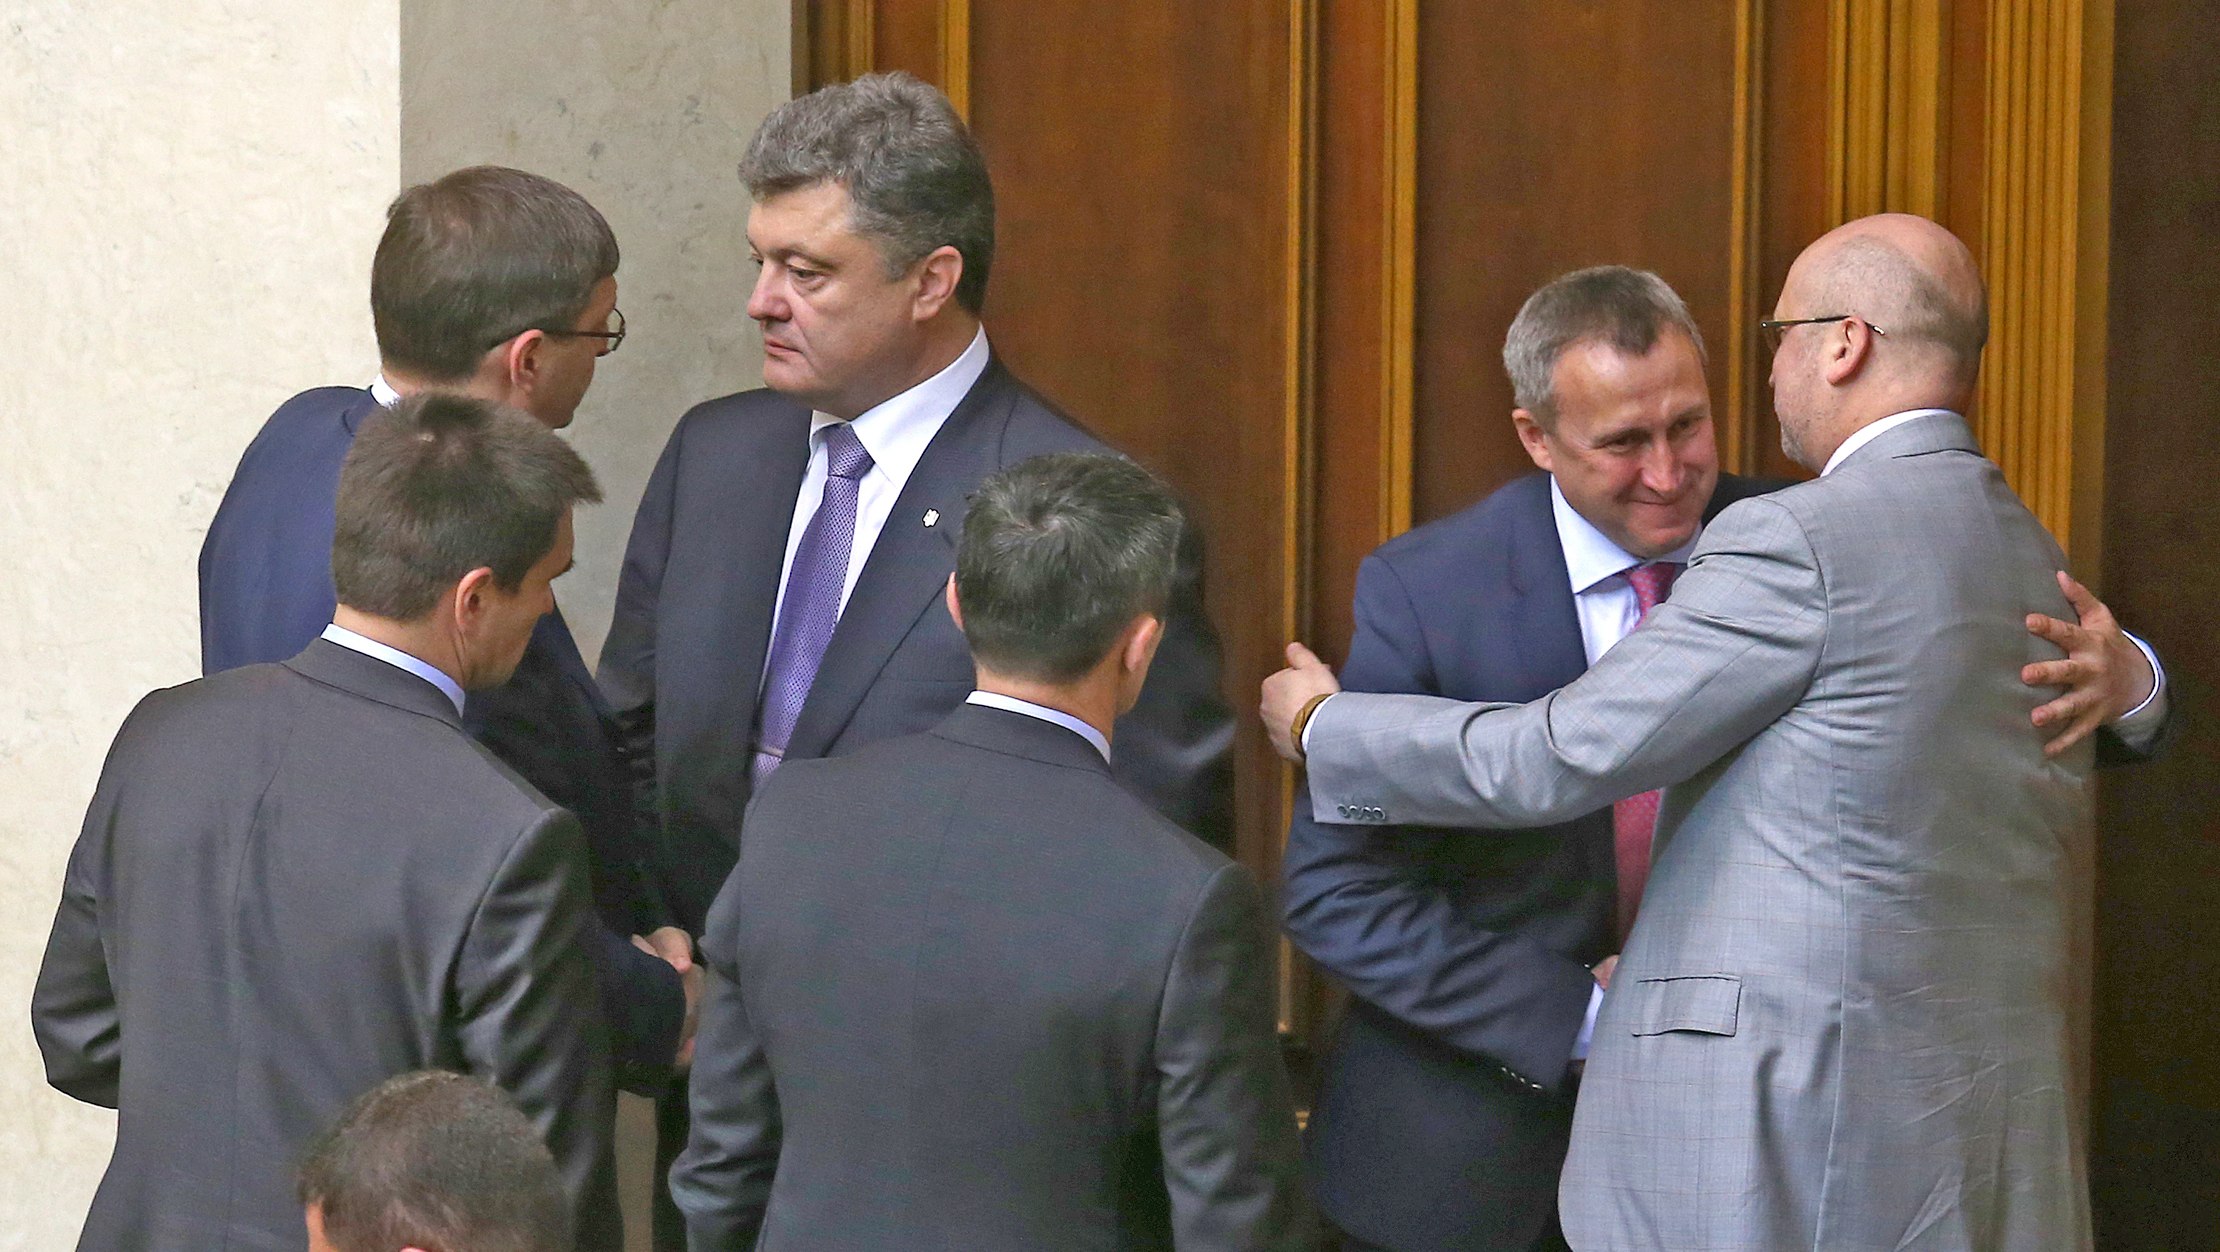 Порошенко и Яценюк созывают на совещание НБУ глав крупных украинских банков